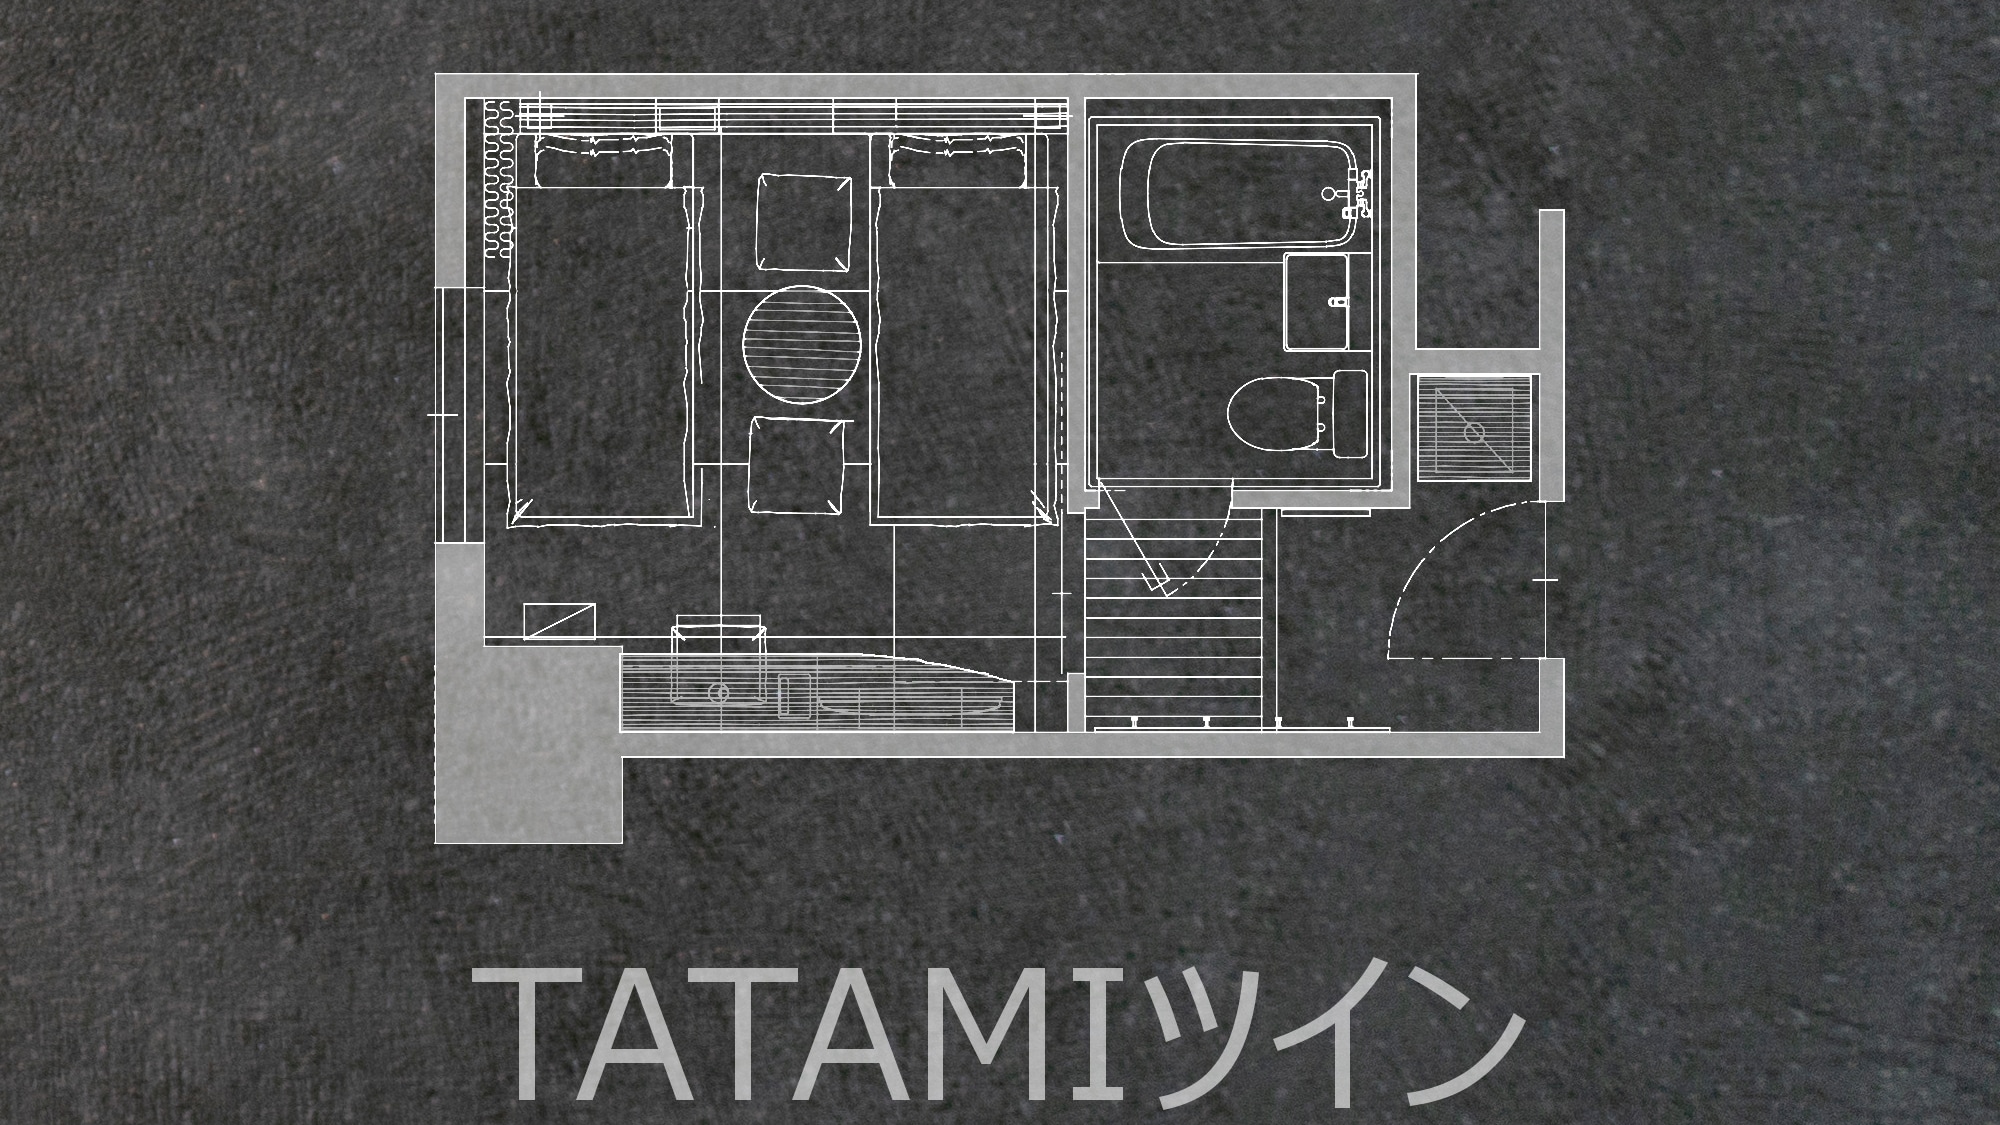 TATAMI twin (floor plan)